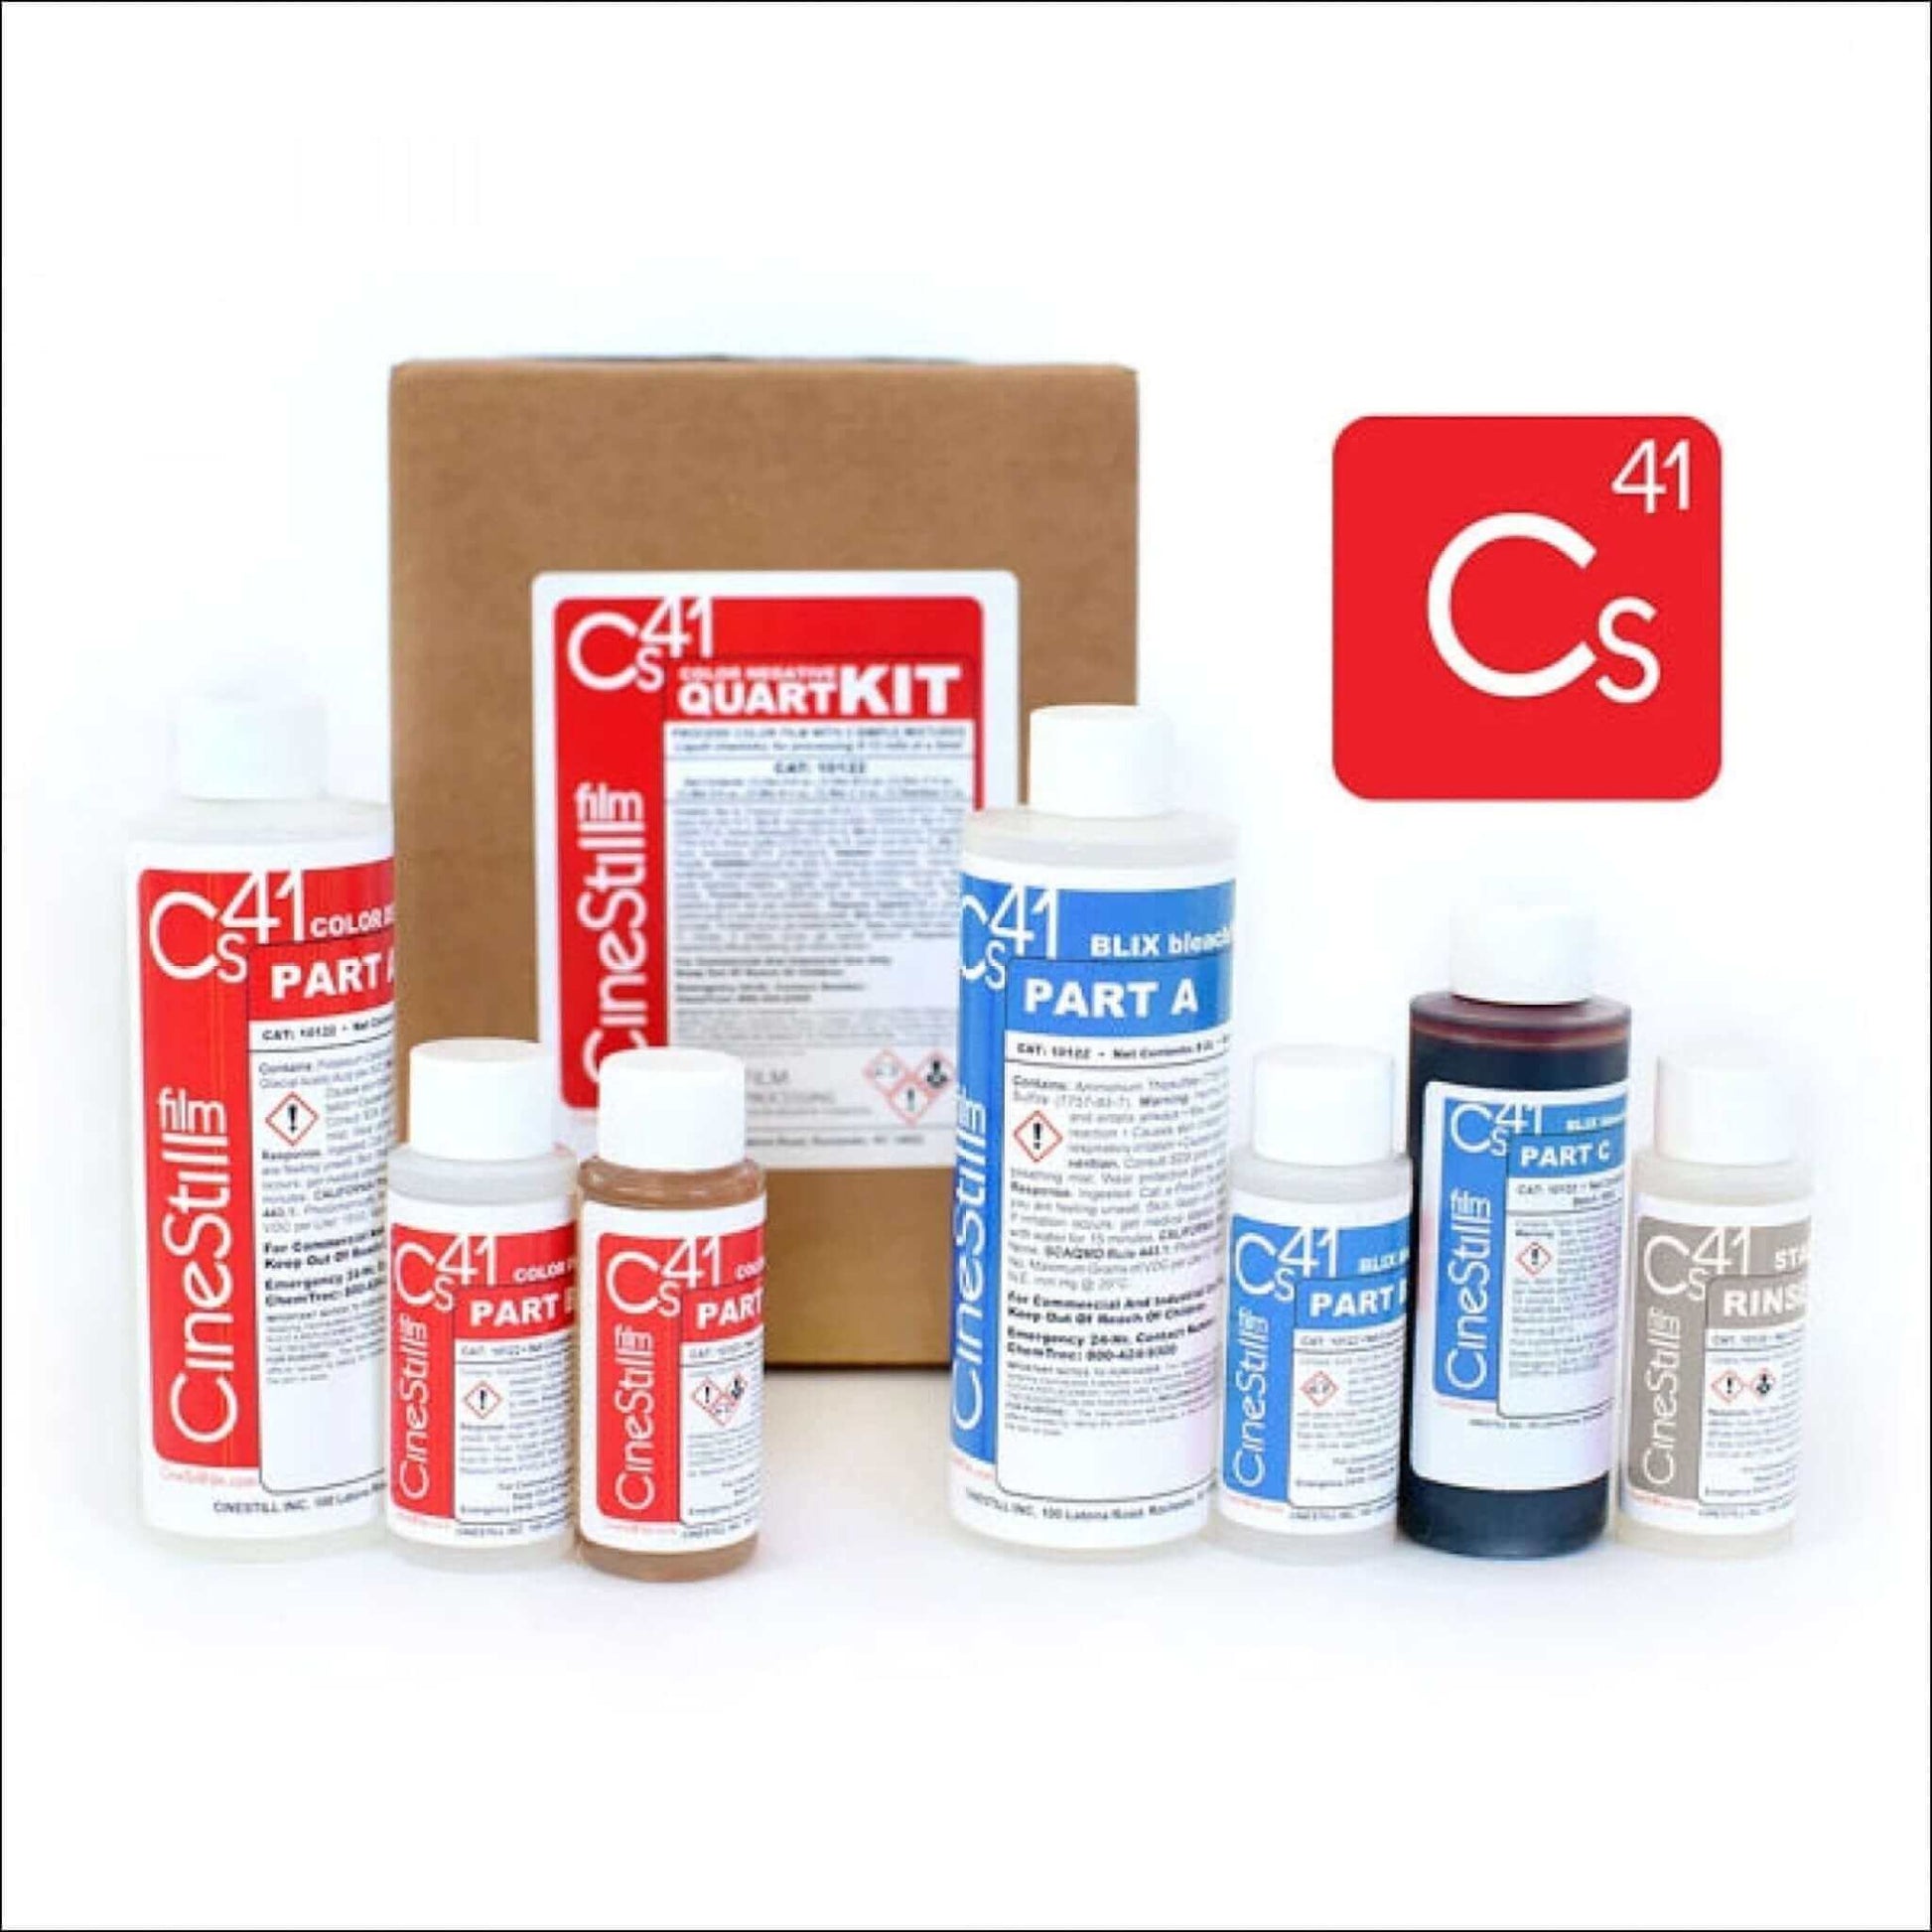 Cinestill Cs41 Liquid Developing Kit For C-41 Color Film - 1